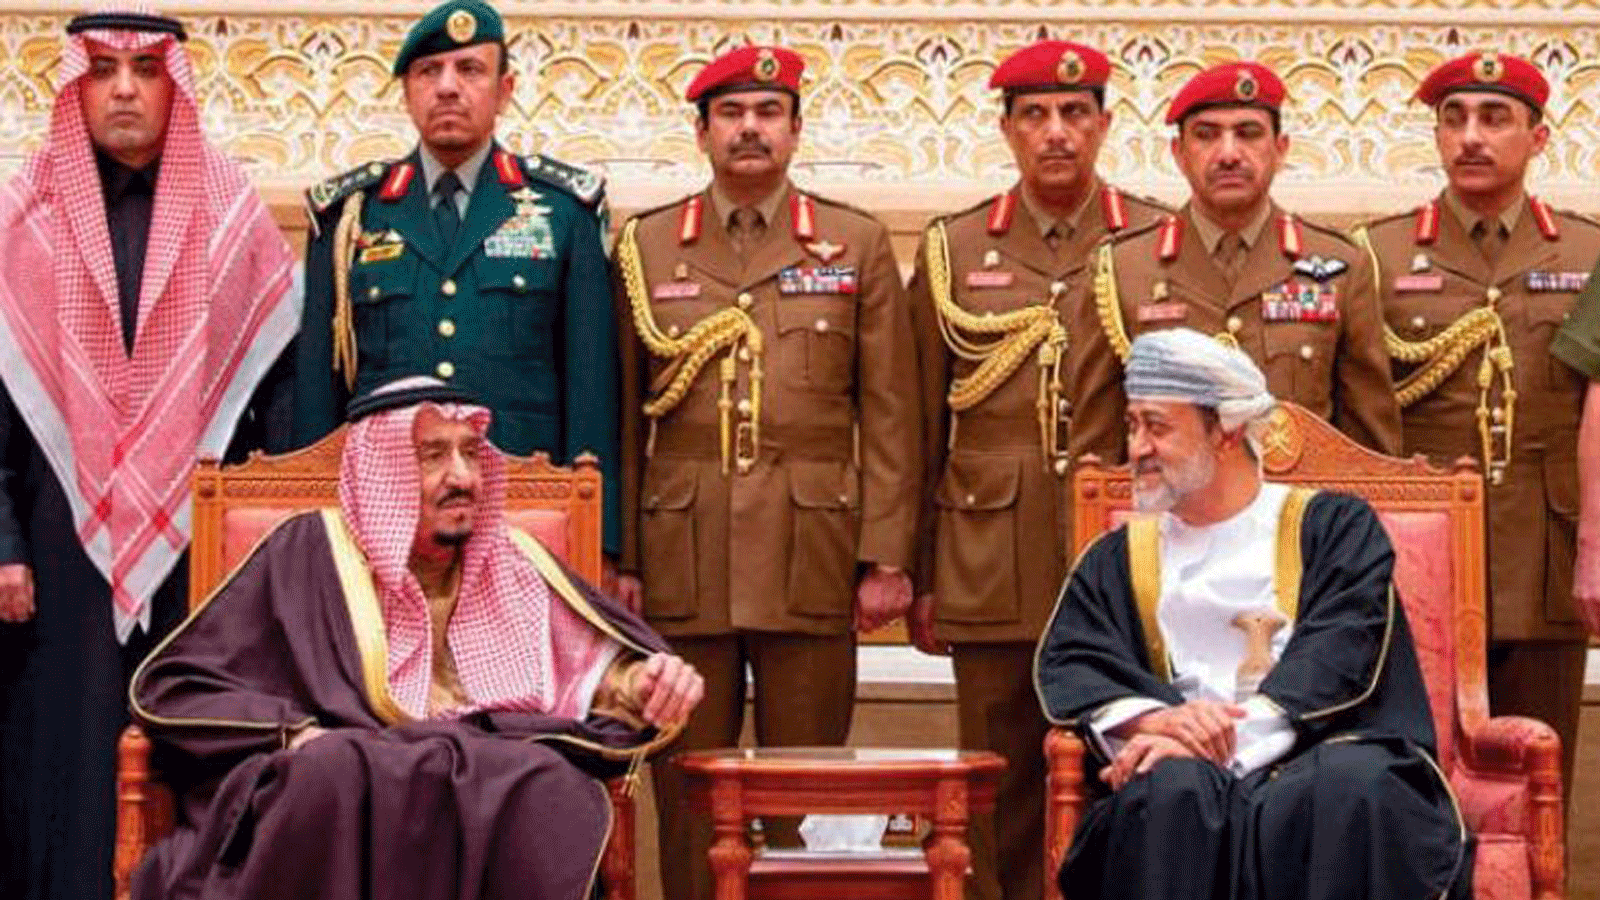 السلطان هيثم يزور السعودية لأول مرة منذ توليه الحكم..فما هي القصة كاملة؟